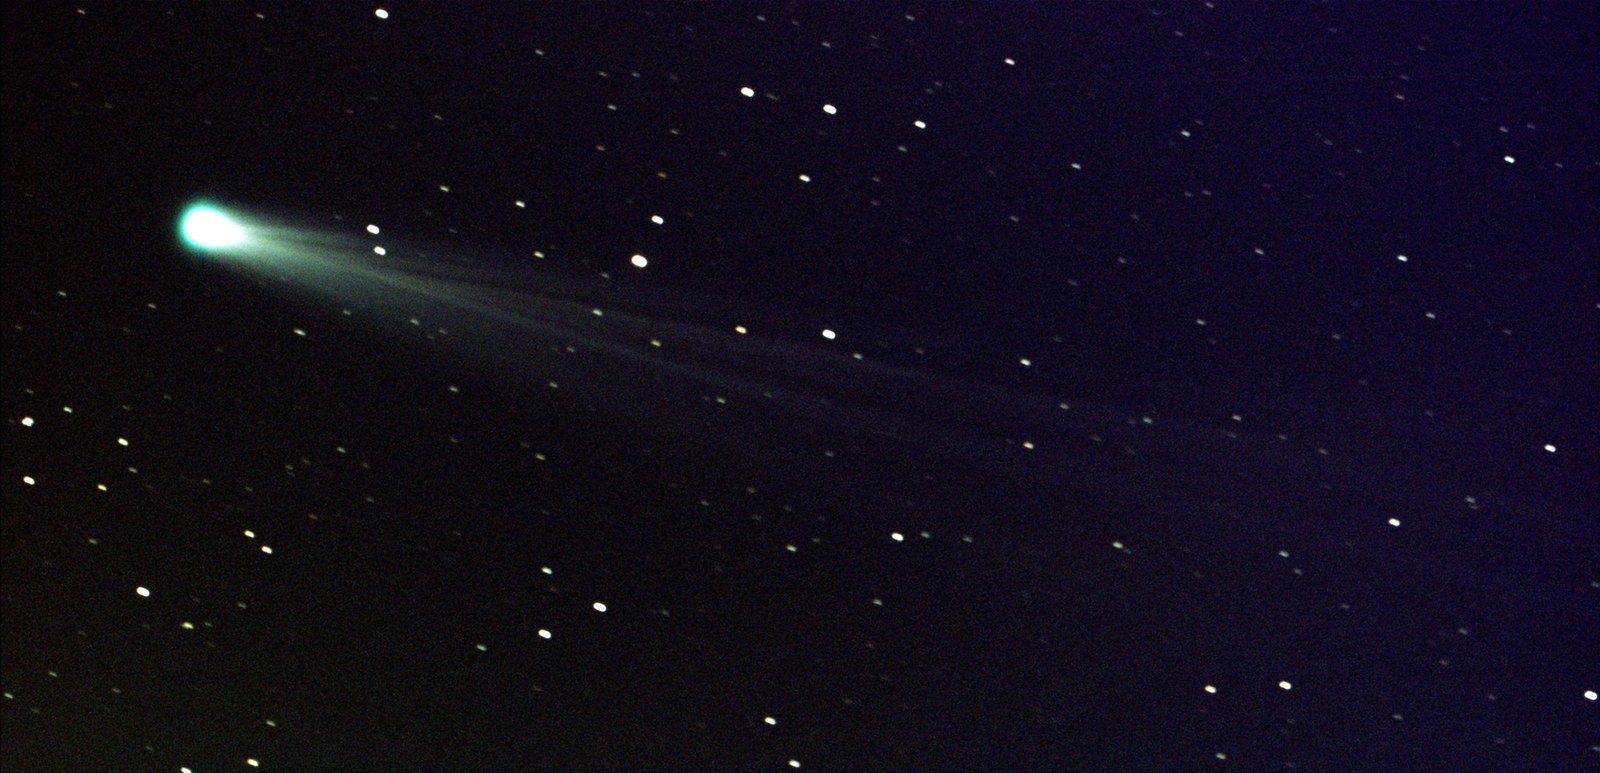 a comet